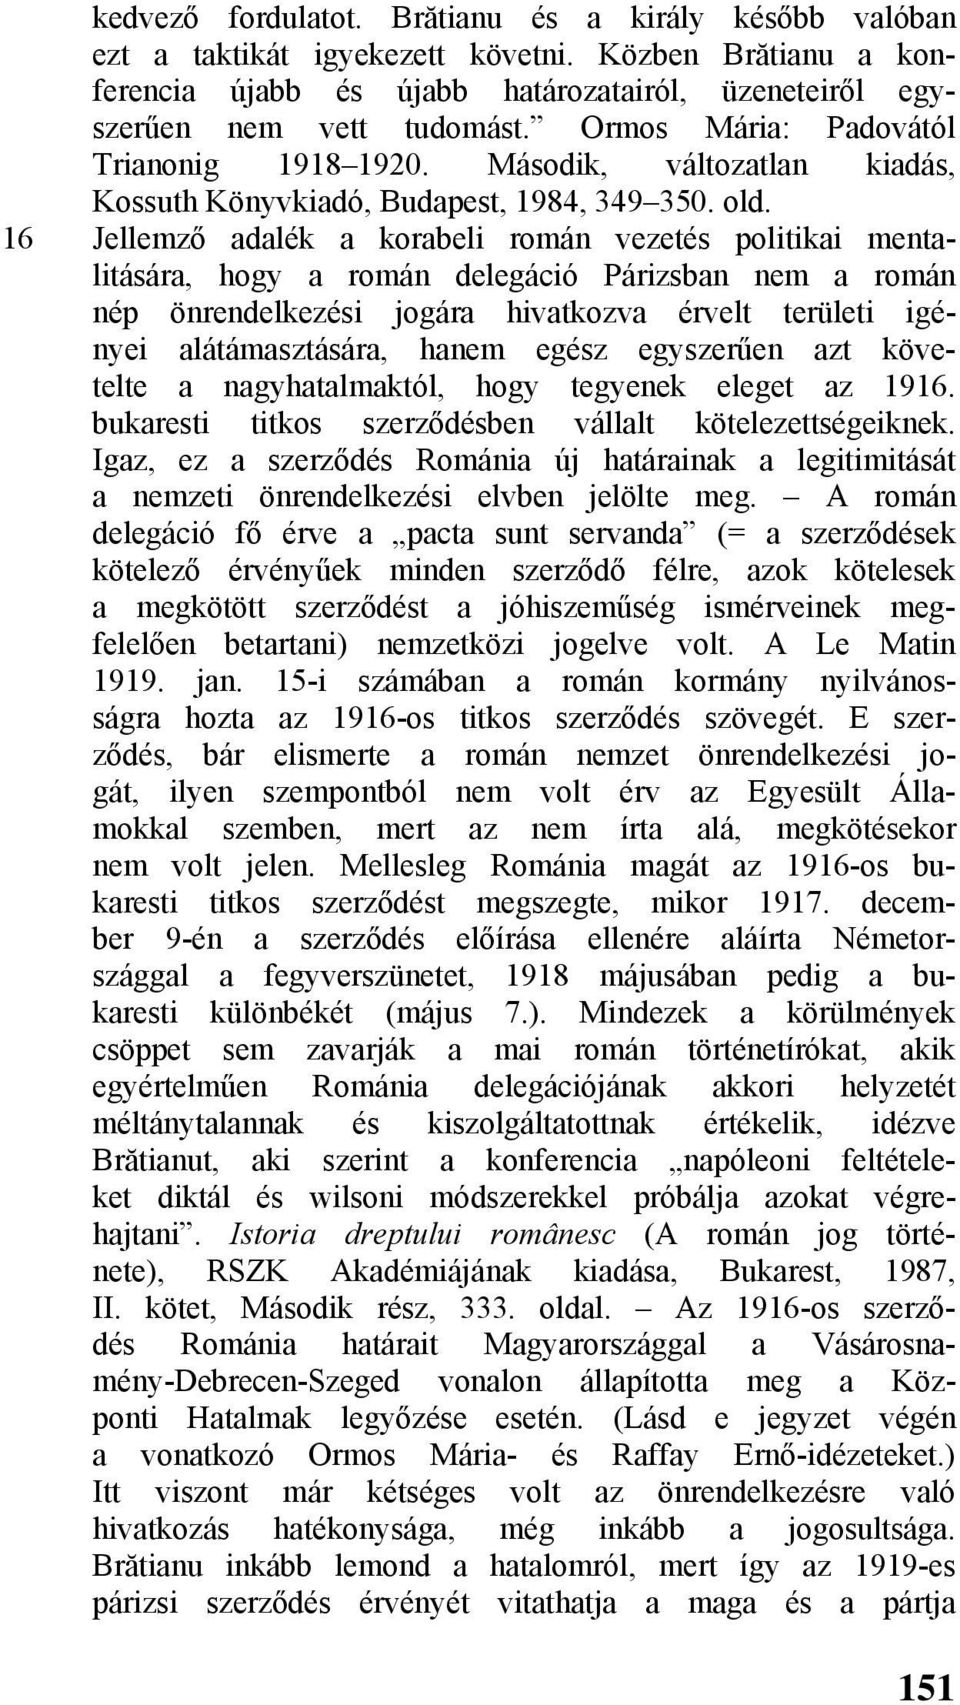 16 Jellemző adalék a korabeli román vezetés politikai mentalitására, hogy a román delegáció Párizsban nem a román nép önrendelkezési jogára hivatkozva érvelt területi igényei alátámasztására, hanem